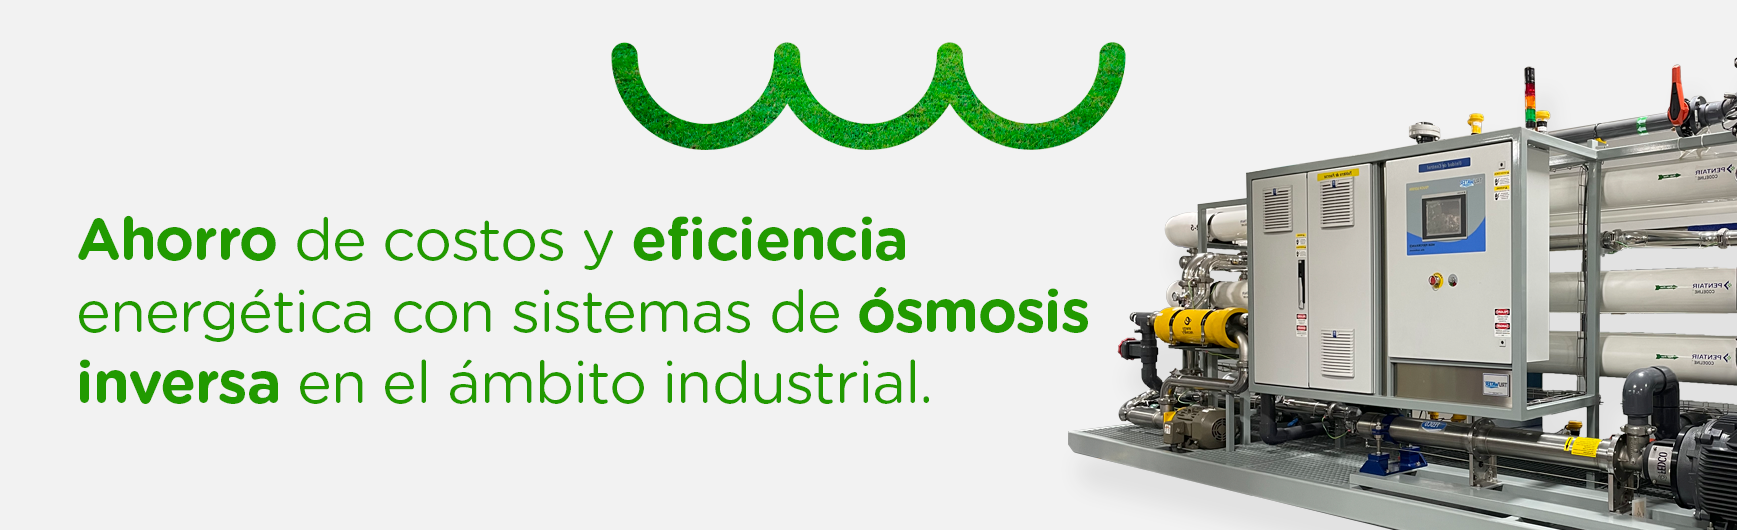 Ahorro de costos y eficiencia energética con sistemas de ósmosis inversa en el ámbito industrial.